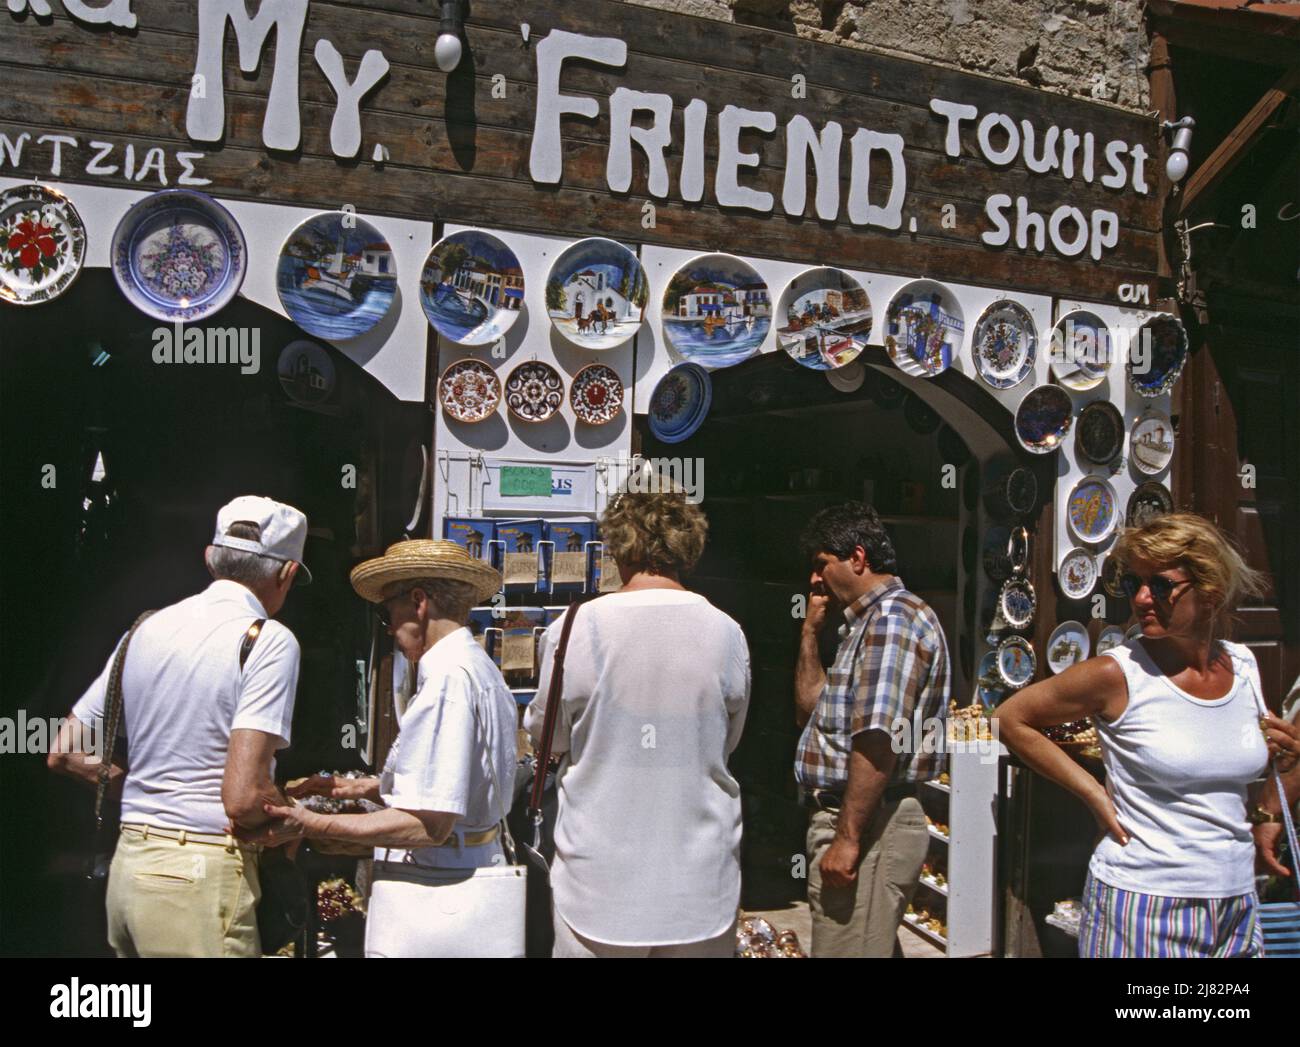 Grupo de turistas frente a una tienda en el casco antiguo de la ciudad, Rodas, la isla de Rodas, Dodecaneso, Grecia Foto de stock